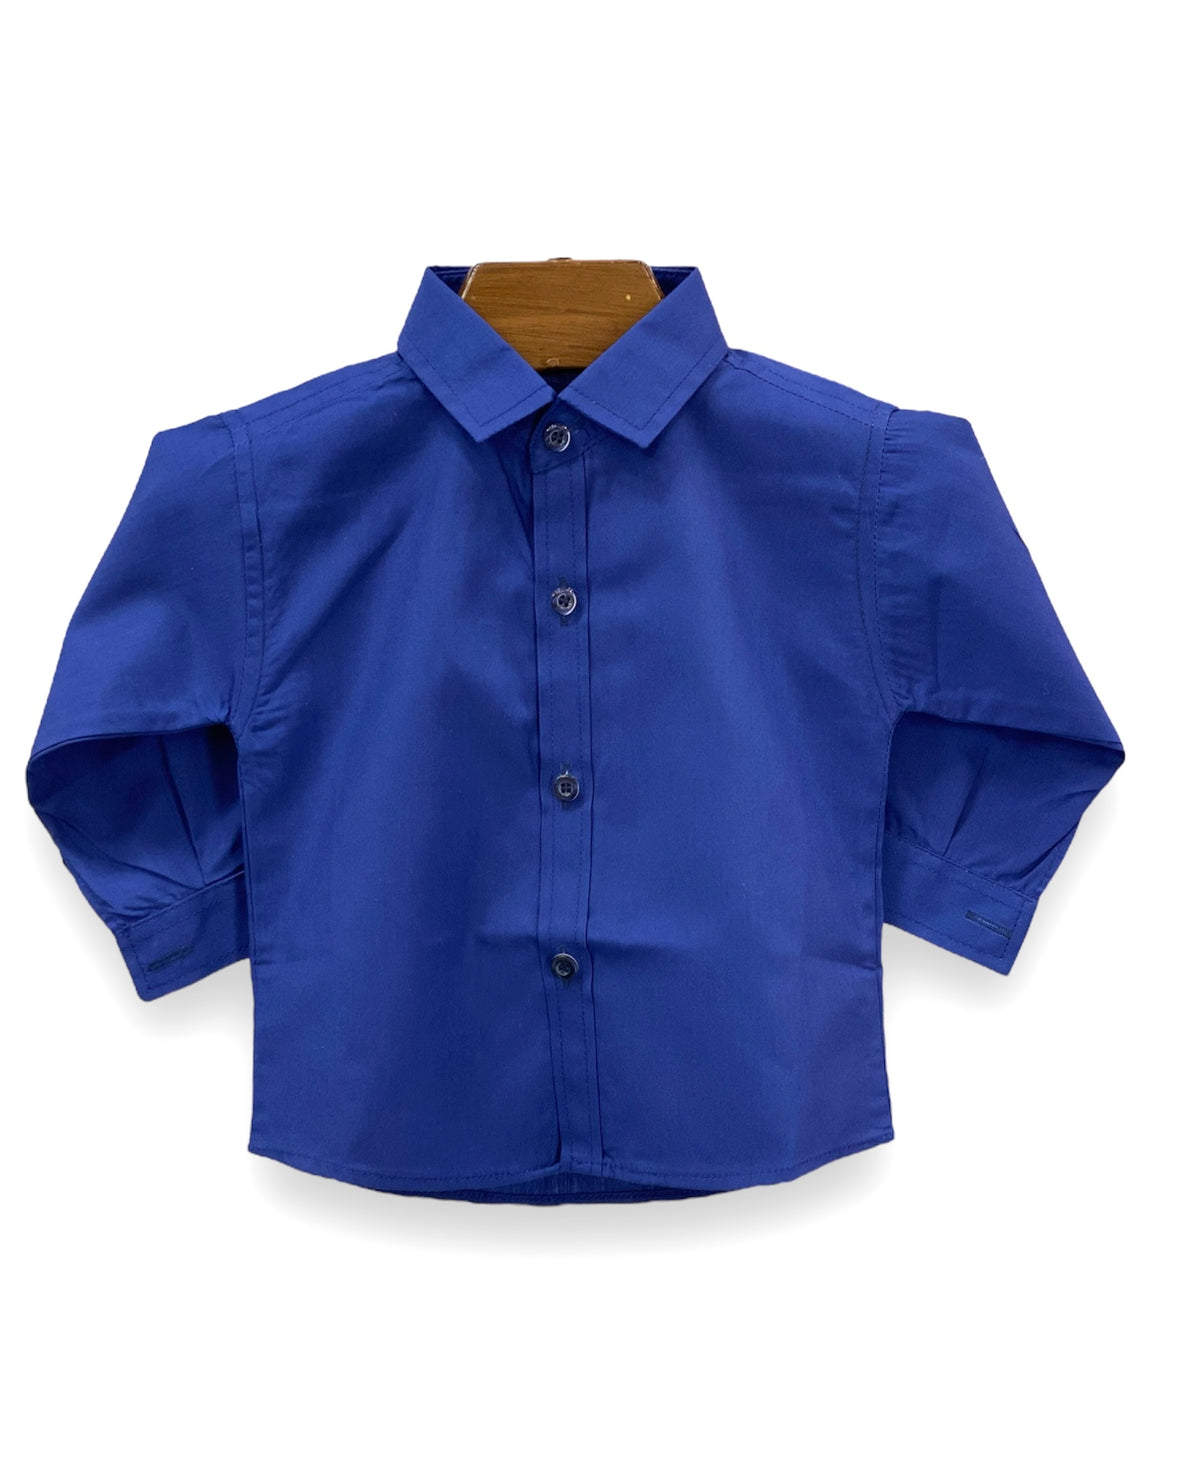 Plain Royal Blue Formal Shirt